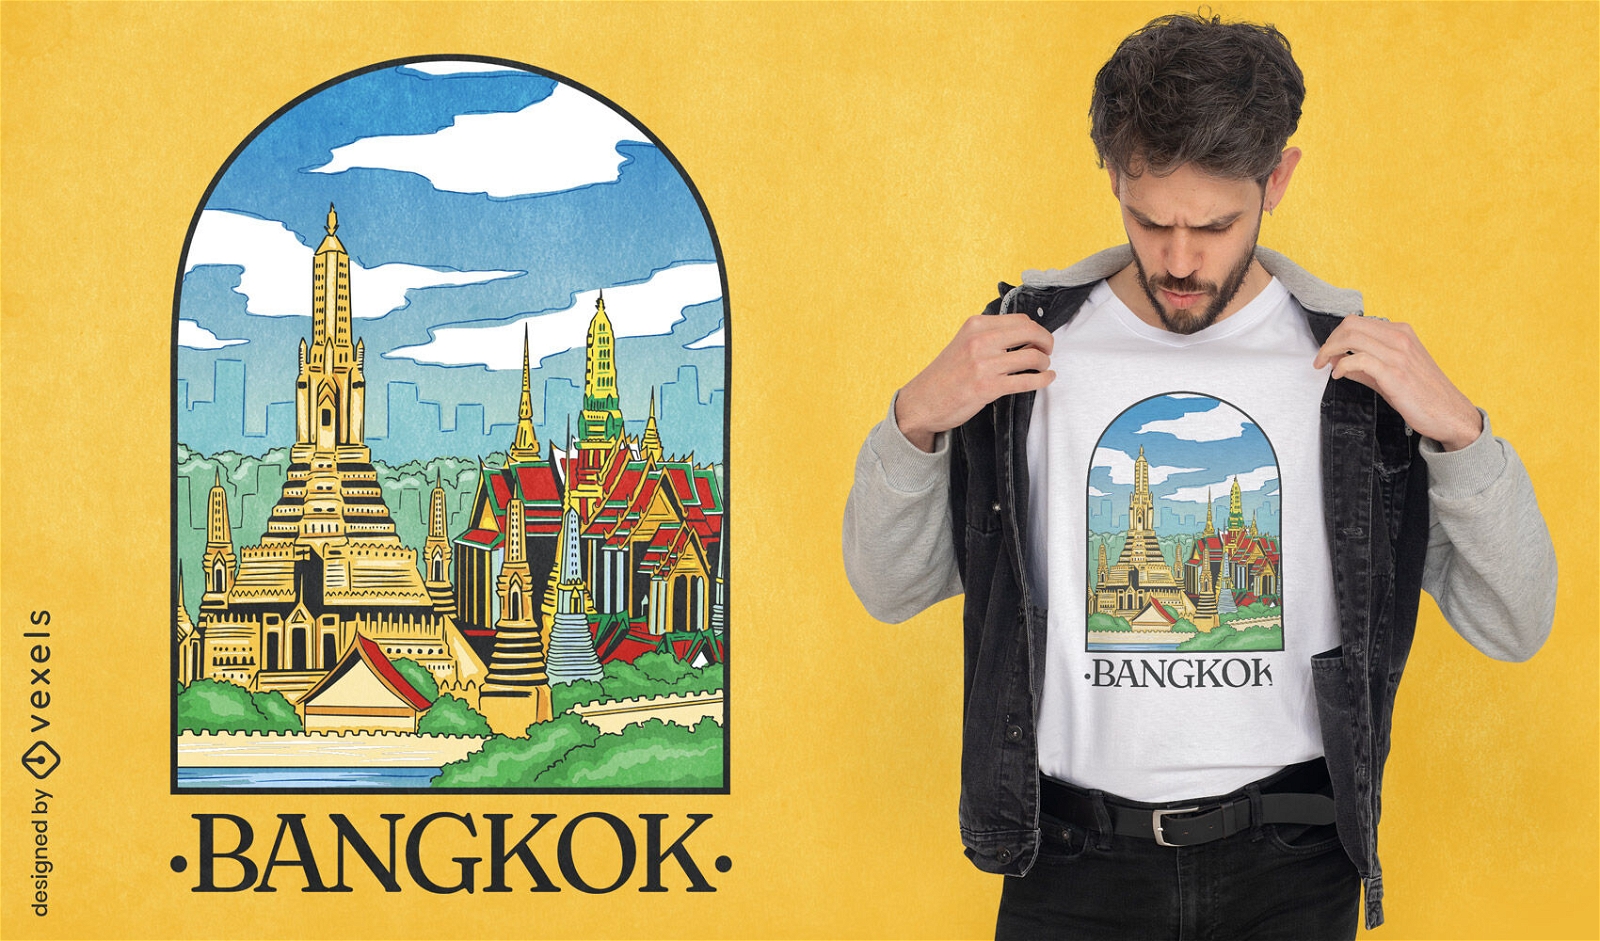 Bangkok landscape t-shirt design